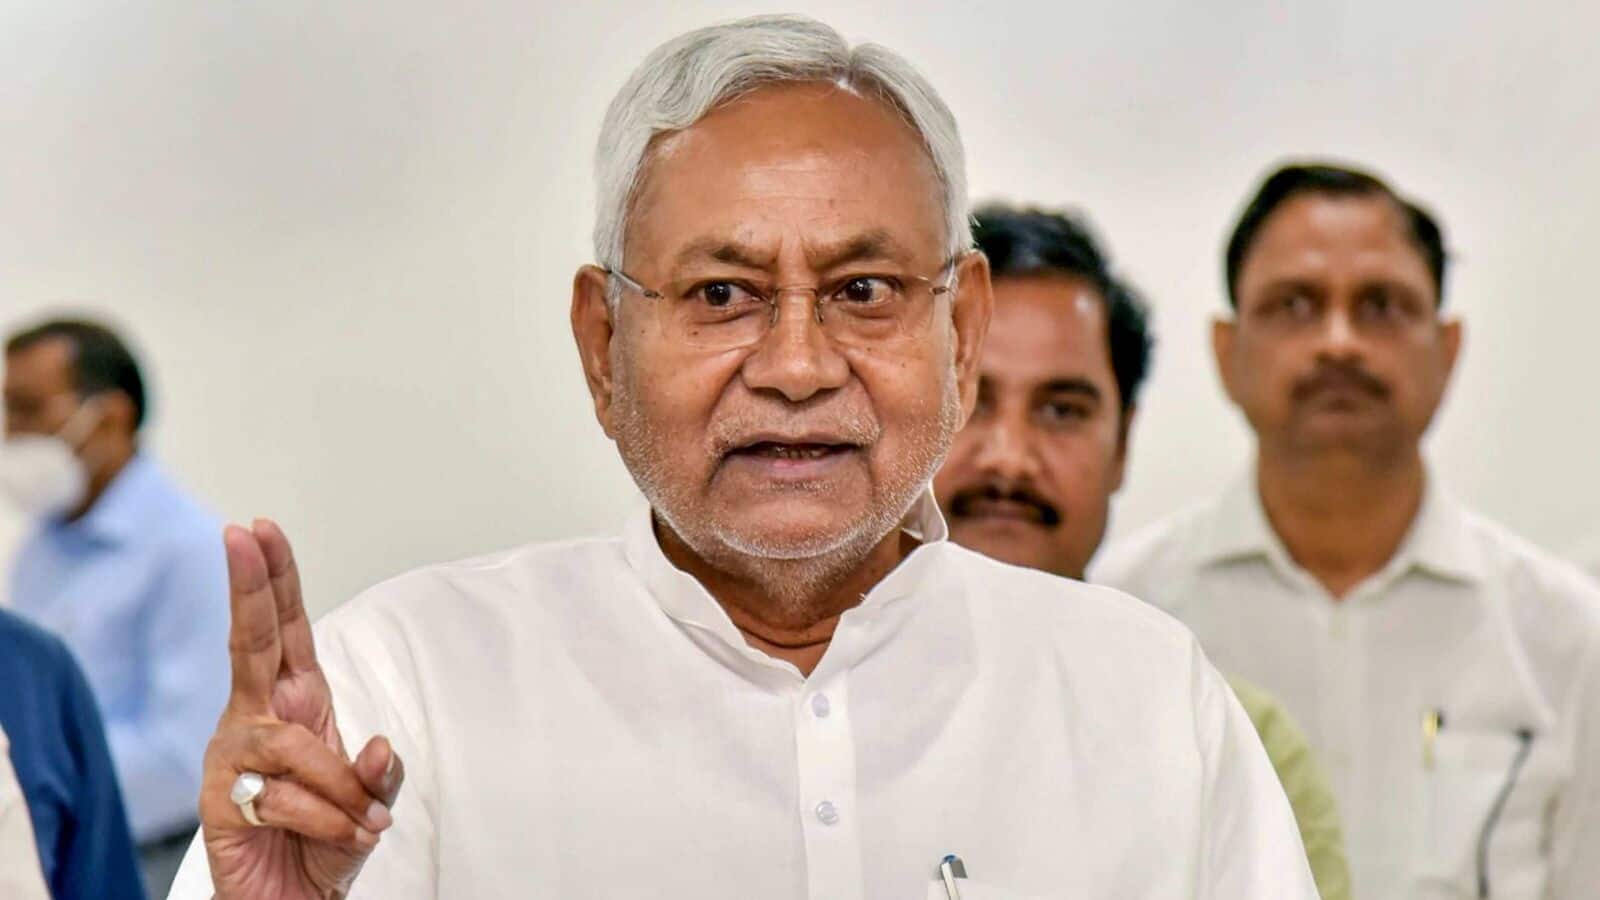 Bihar political crisis 'पहले भी बीजेपी के साथ थे और आगे भी रहेंगे', शपथ  लेने के बाद सीएम नीतीश कुमार की पहली प्रतिक्रिया... प्रधानमंत्री नरेंद्र  मोदी ने ...